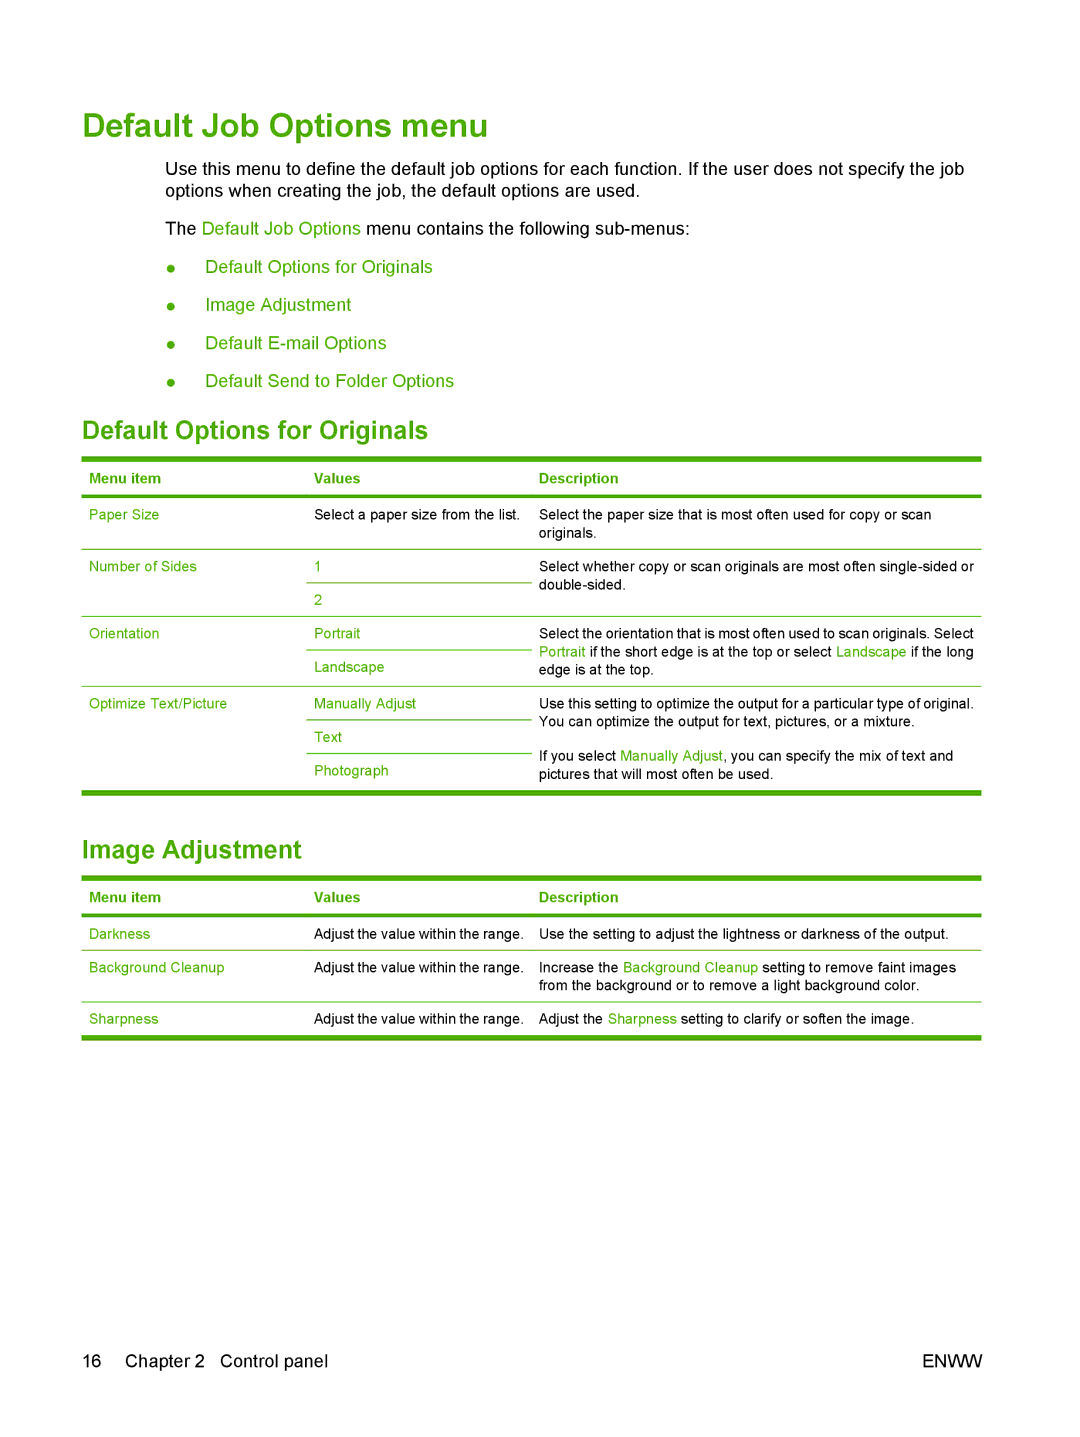 HP 9250C manual Default Job Options menu, Default Options for Originals, Image Adjustment, Menu item Values Description 